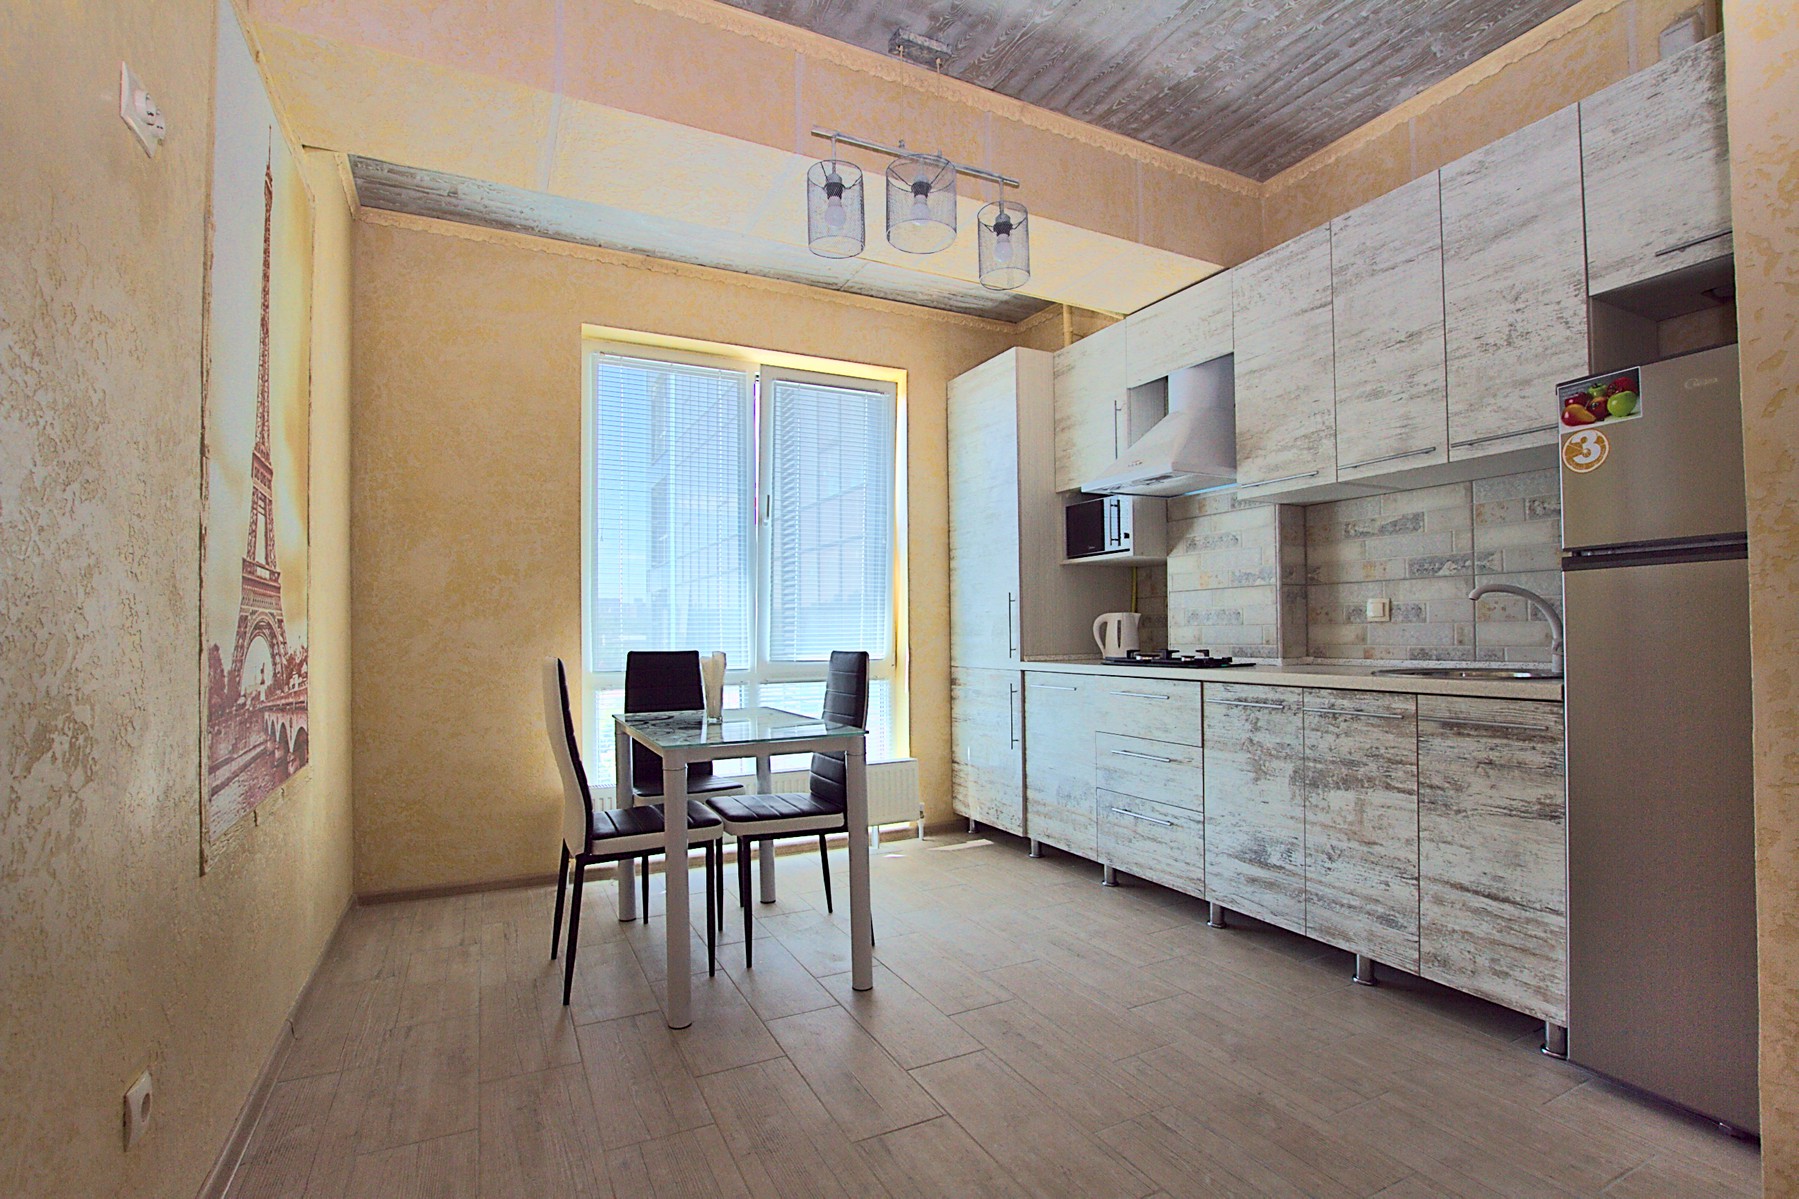 Uptown Studio Apartment es un apartamento de 1 habitación en alquiler en Chisinau, Moldova